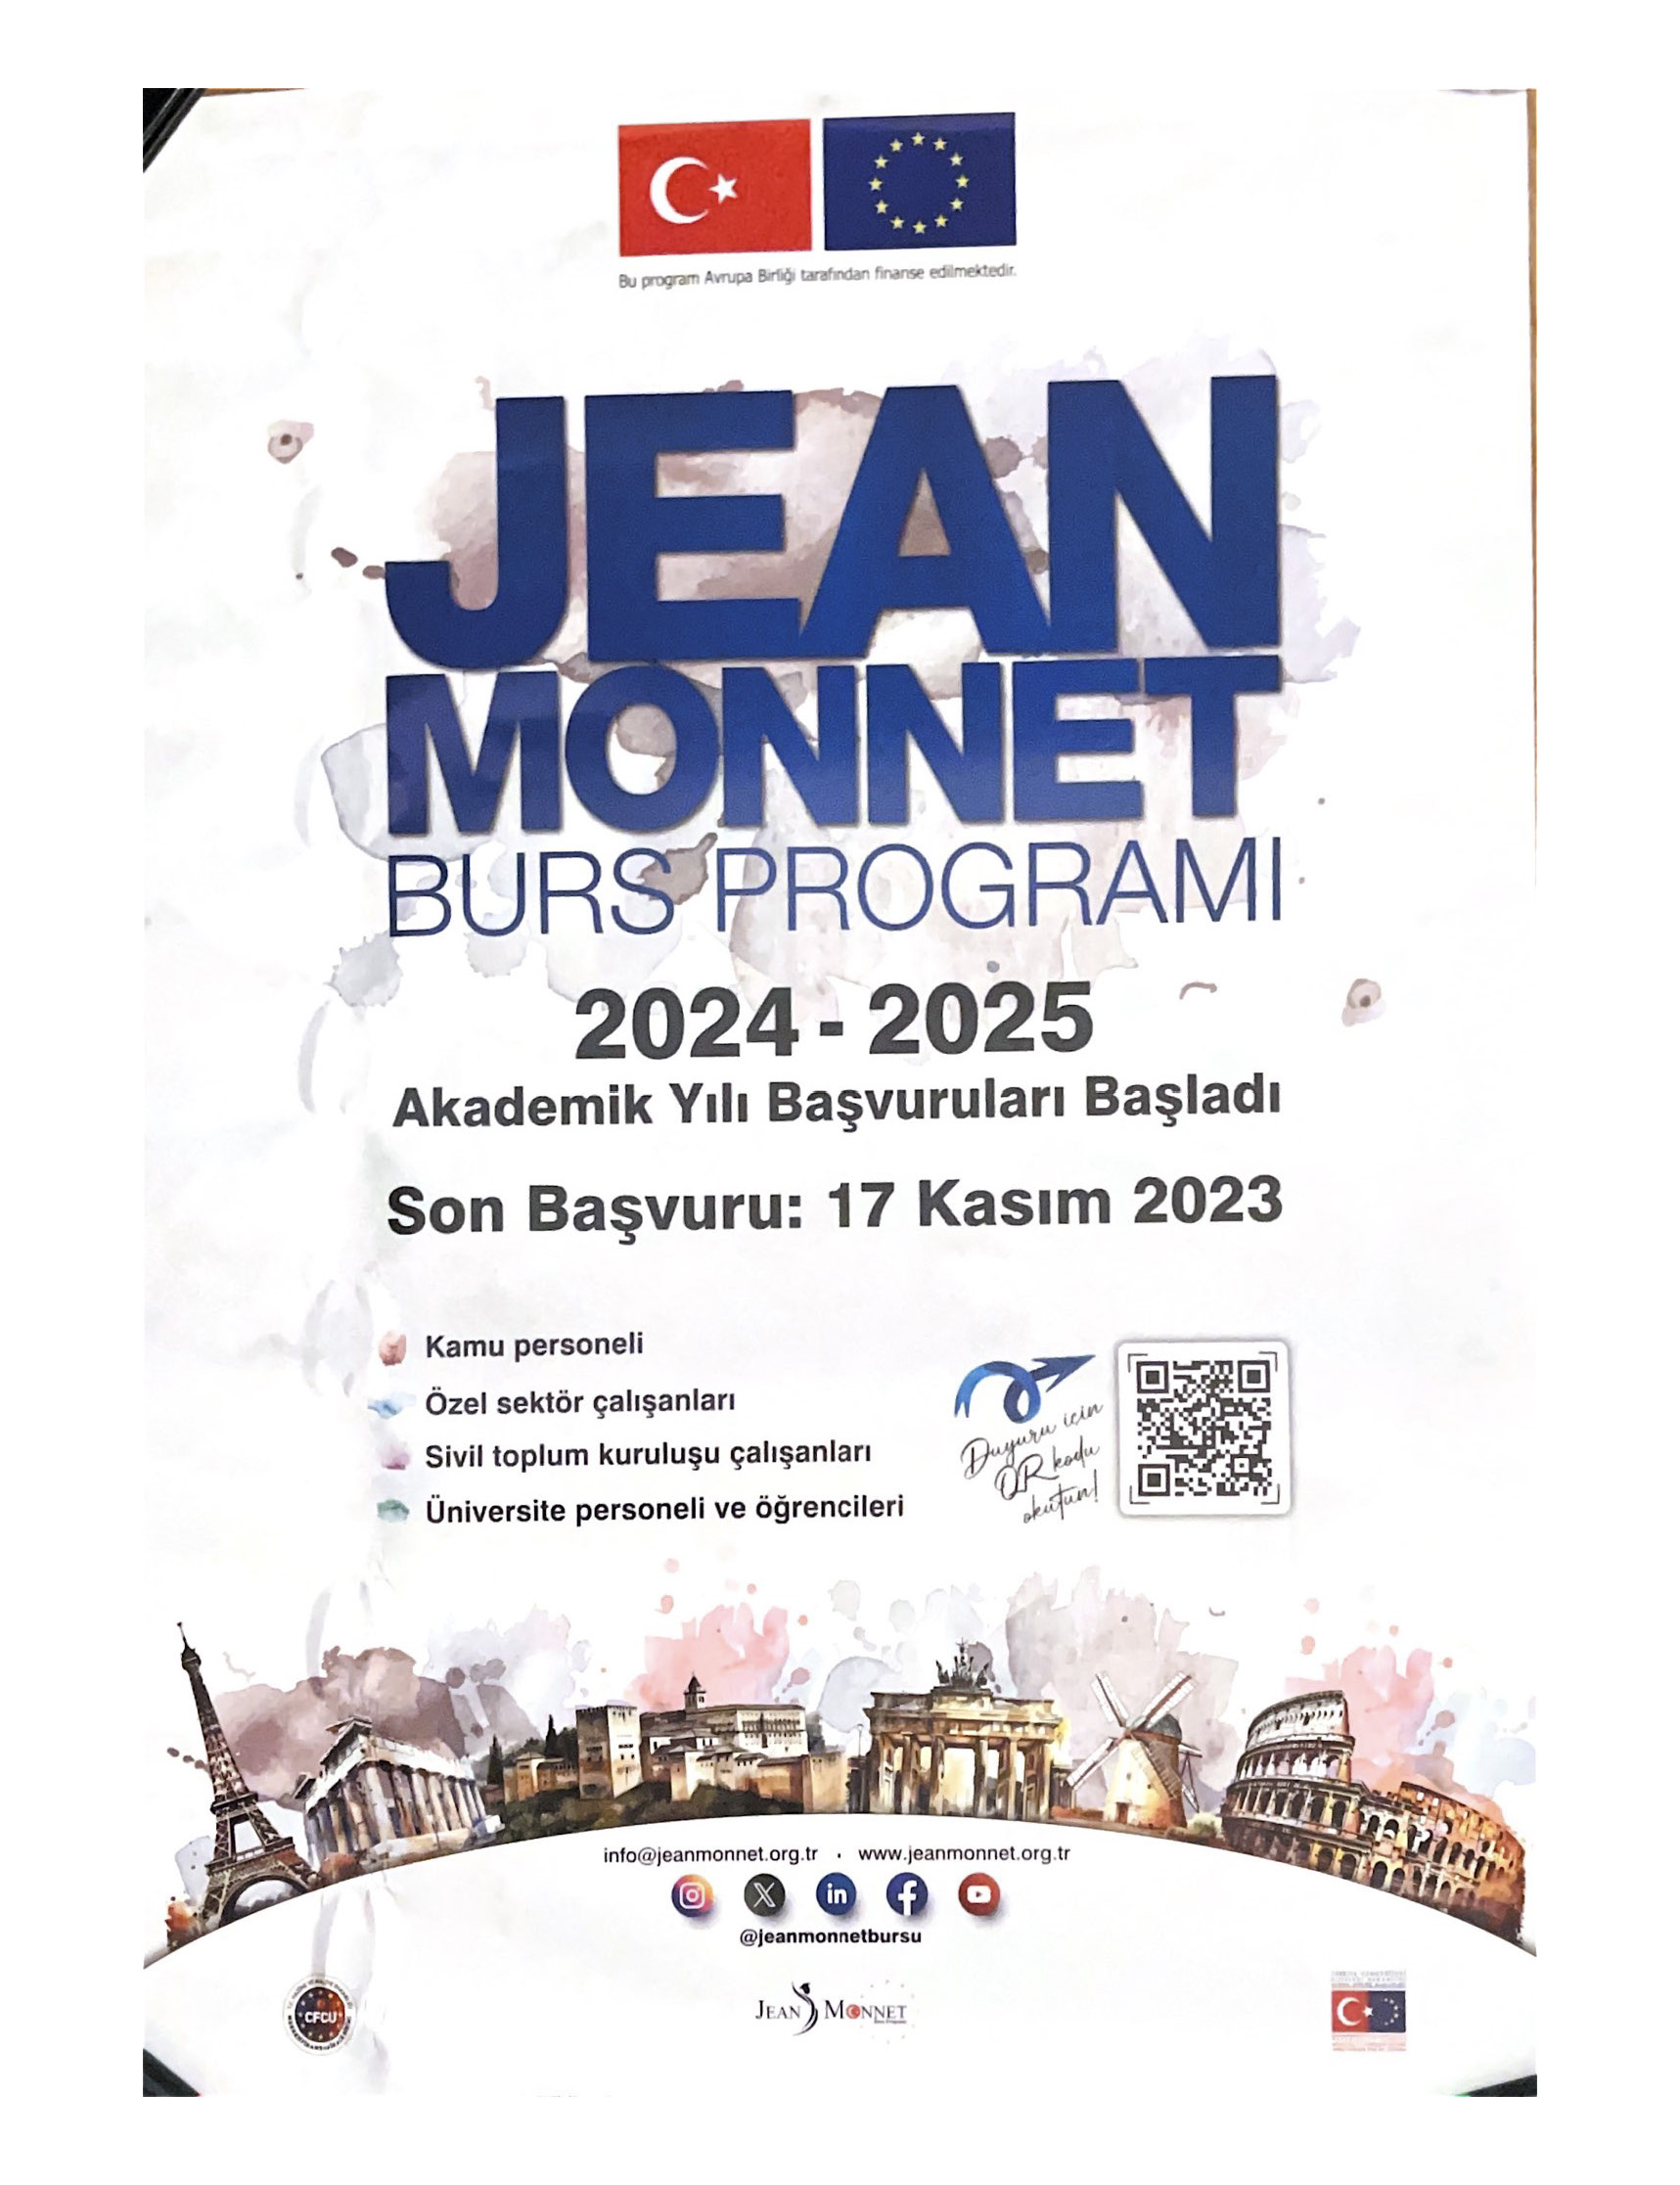 Jean Monnet Burs Programı 2024-2025 Akademik Yılı Duyurusu Afiş.jpg (469 KB)